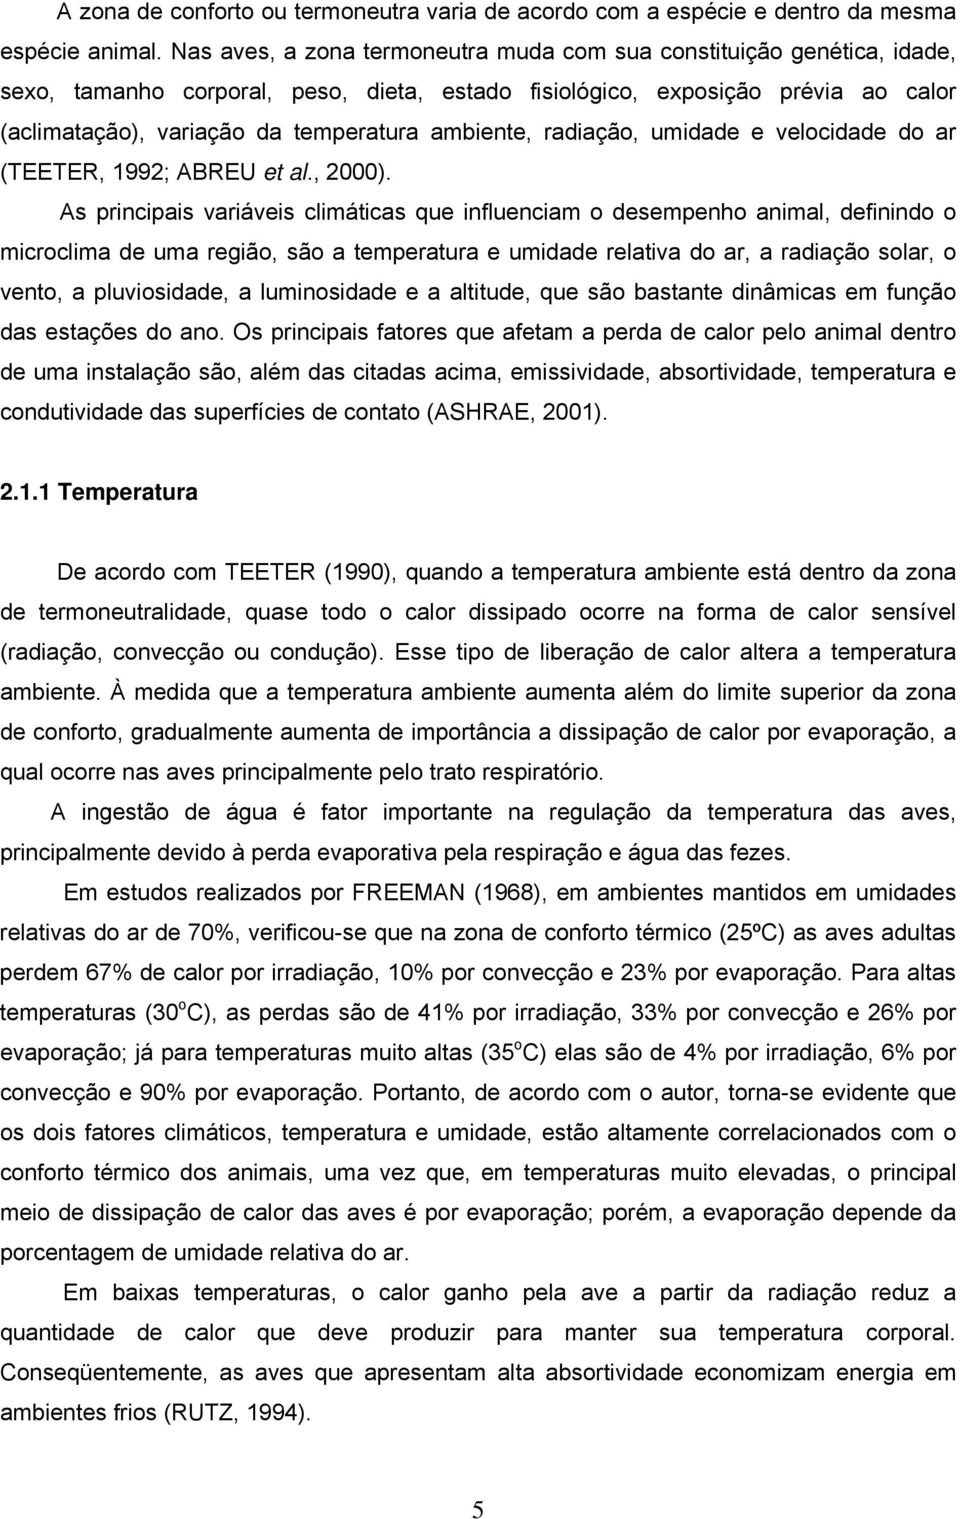 ambiente, radiação, umidade e velocidade do ar (TEETER, 1992; ABREU et al., 2000).